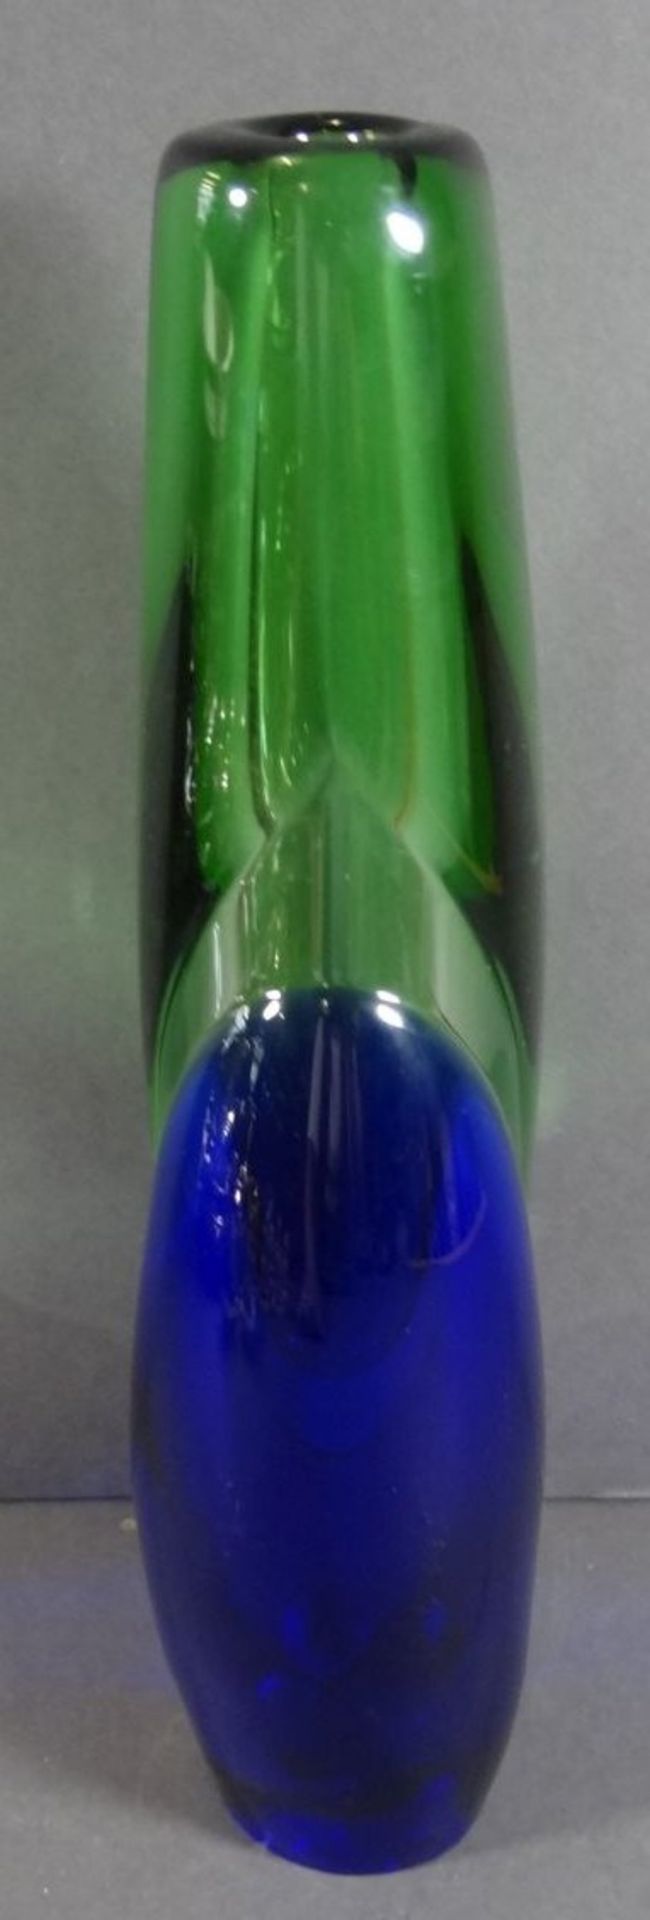 schwere grün-blaue Murano-Vase, H-27 cm, 2 kg., - Bild 3 aus 5